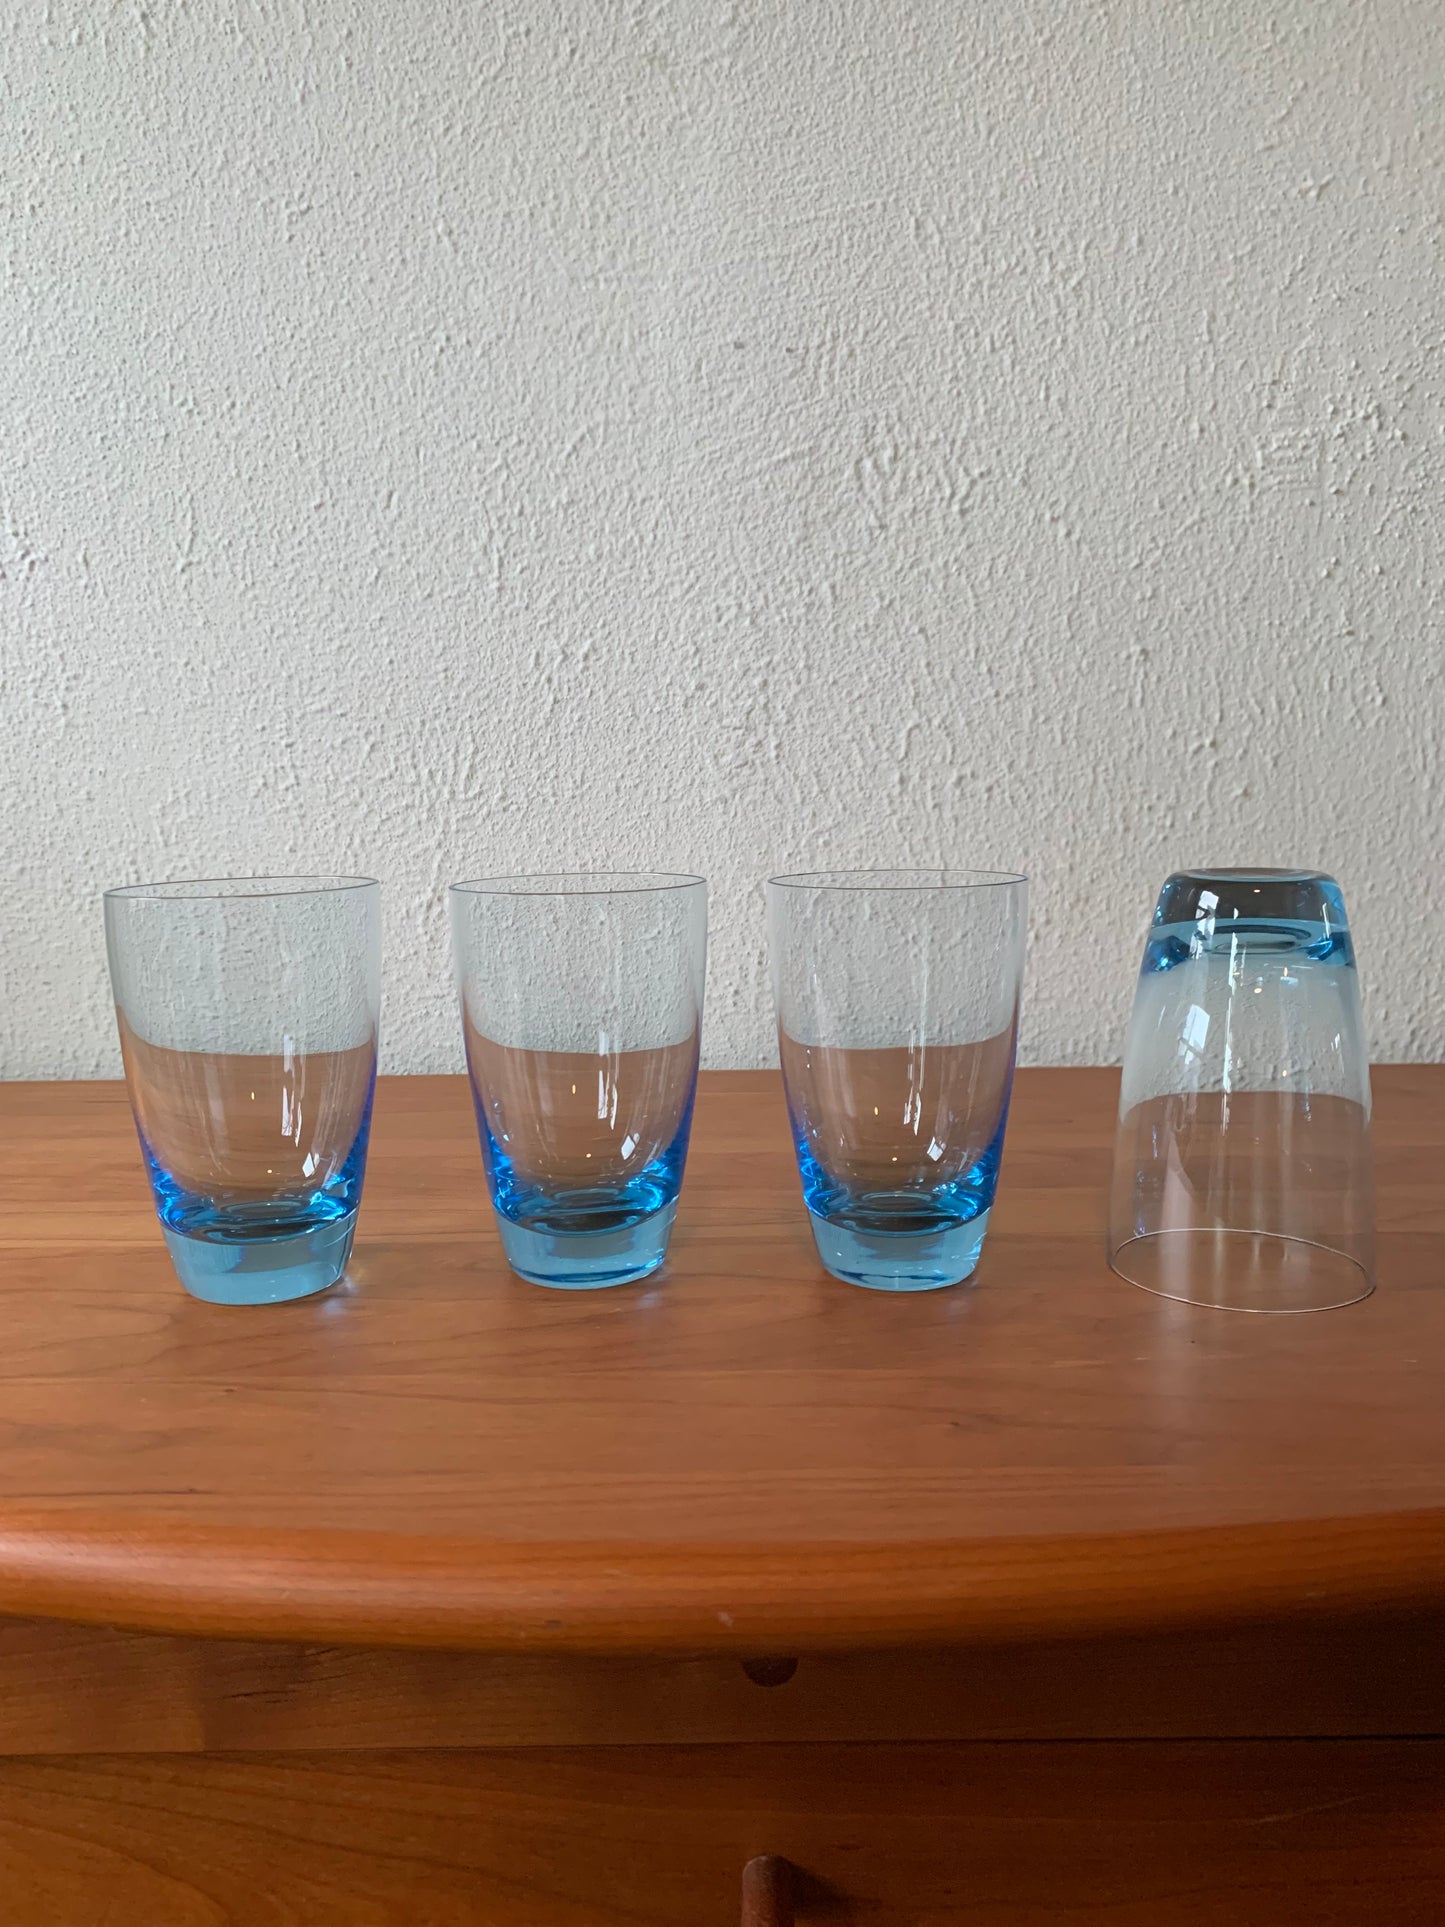 Pale Blue Juice Glass